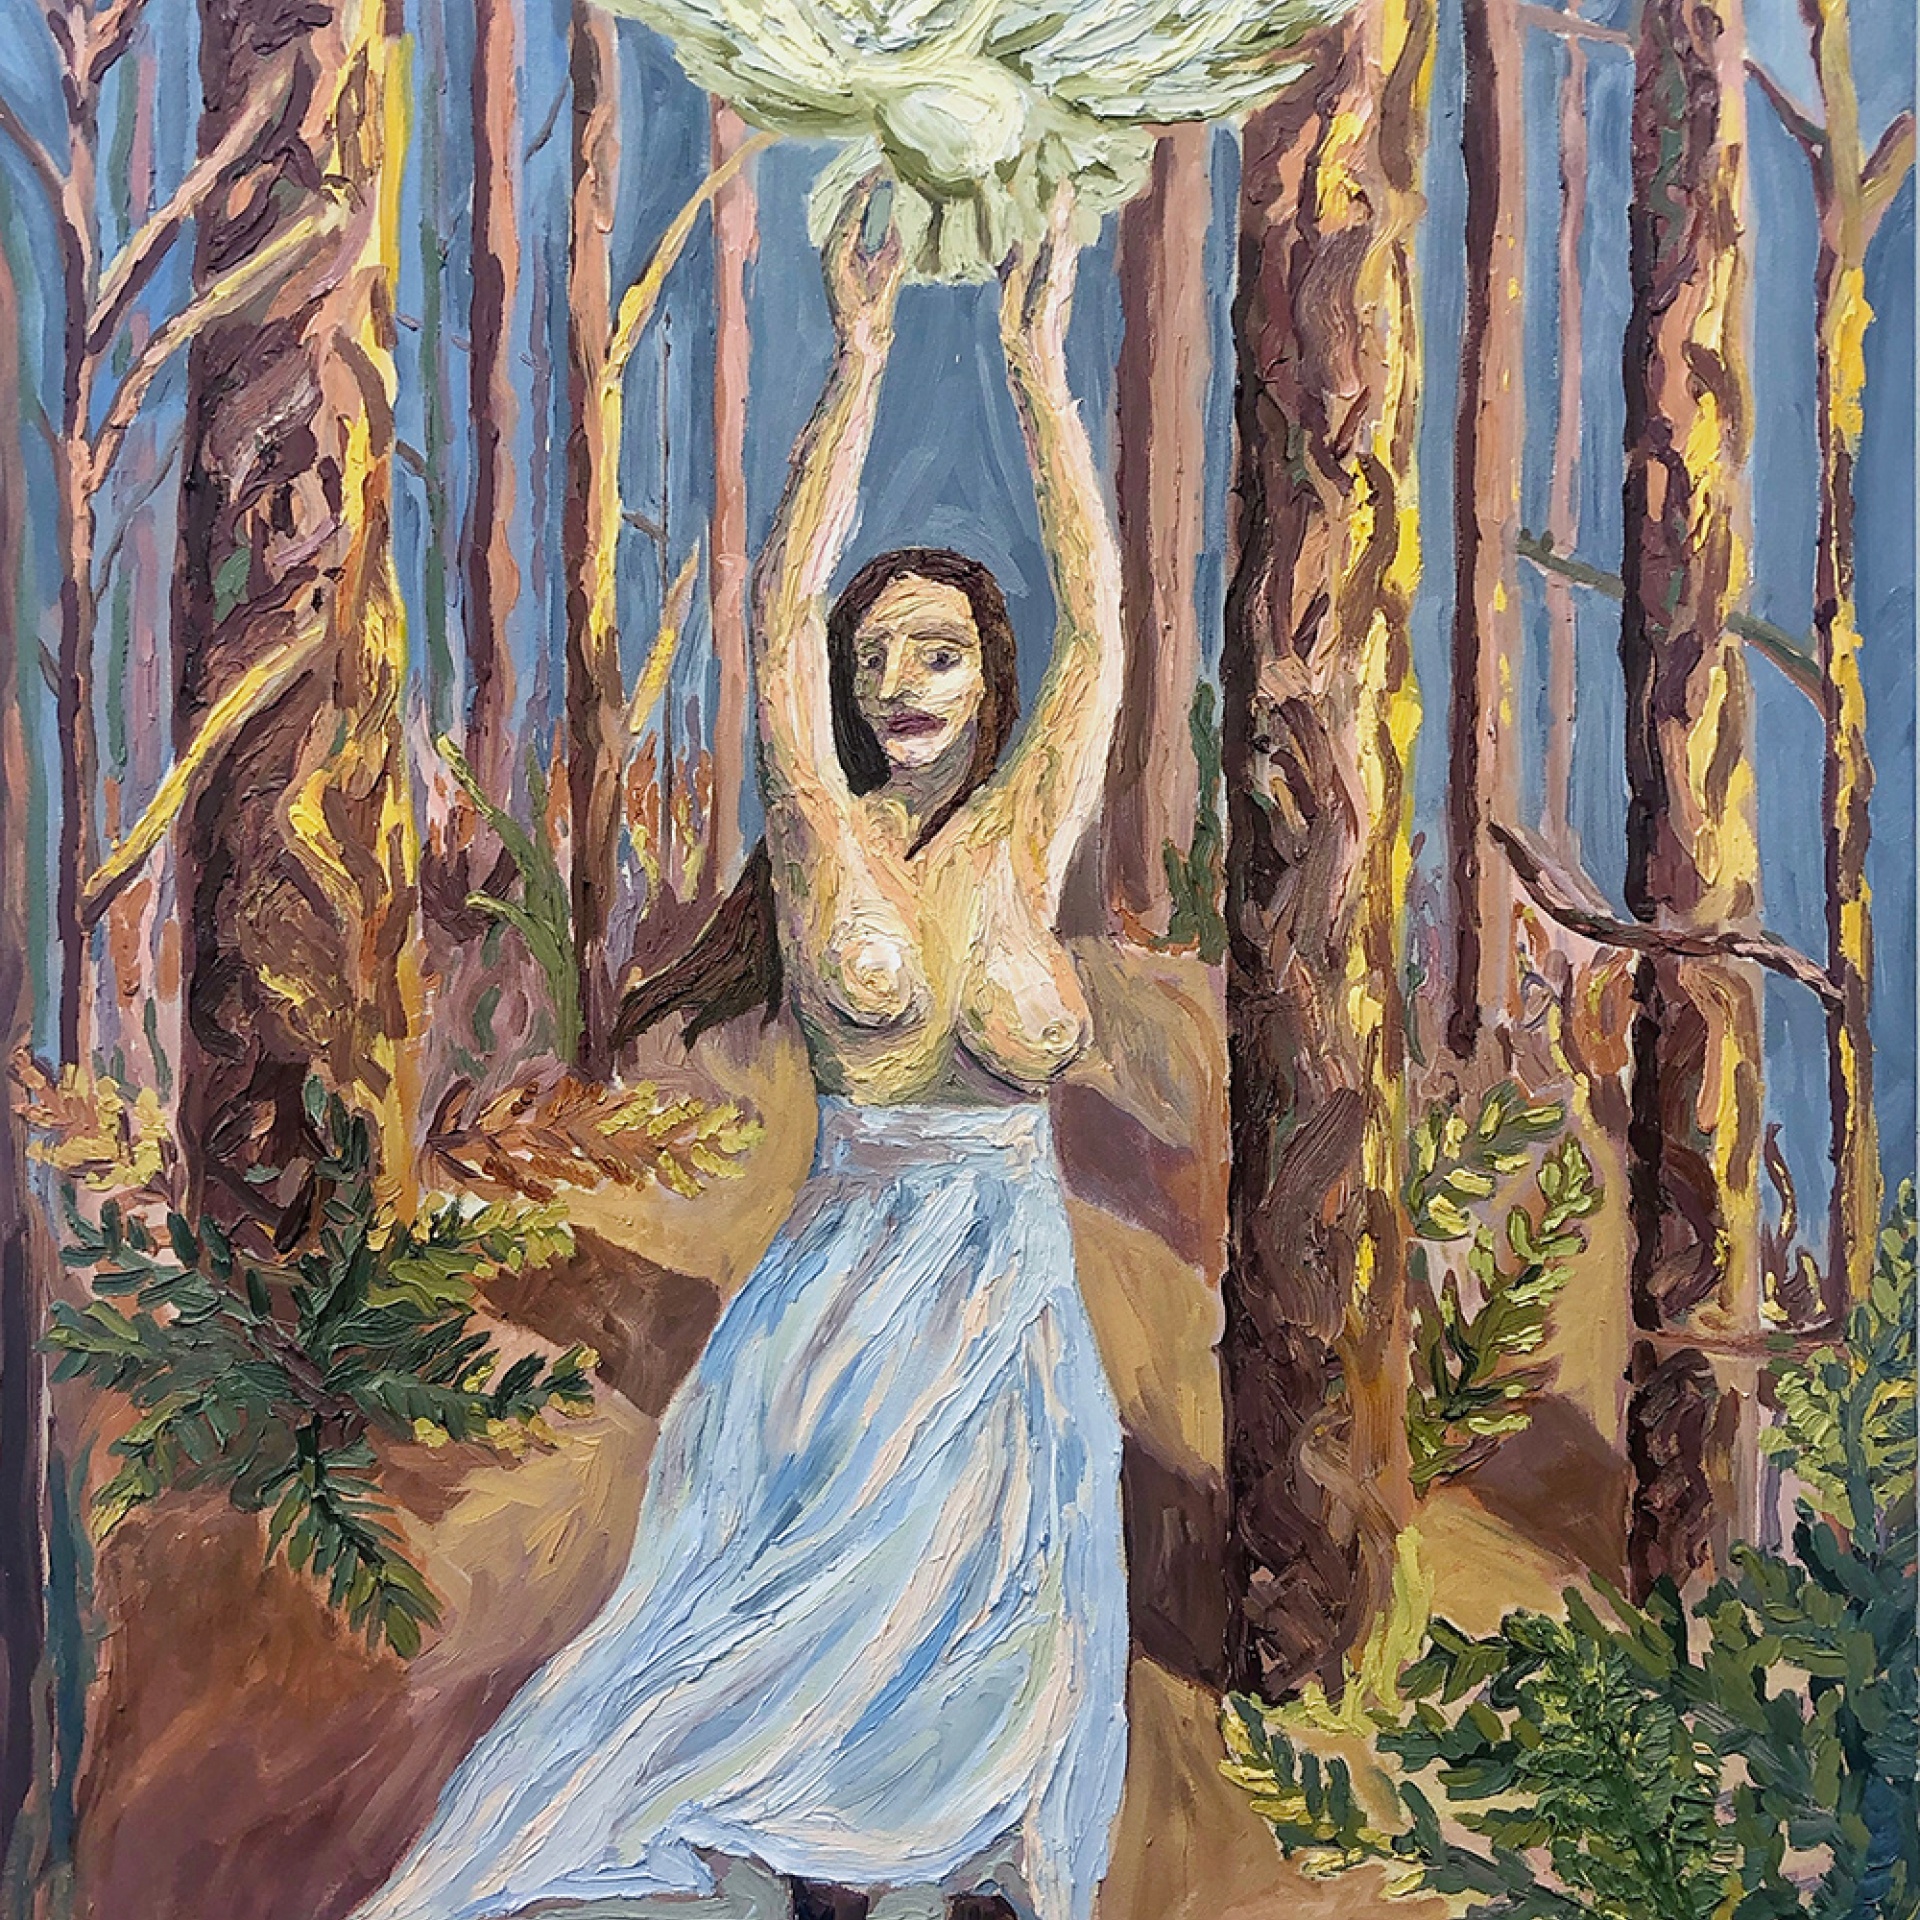 Ragana, Katrina Kuras, Winter 2019, 3ft x 4ft, oil on canvas